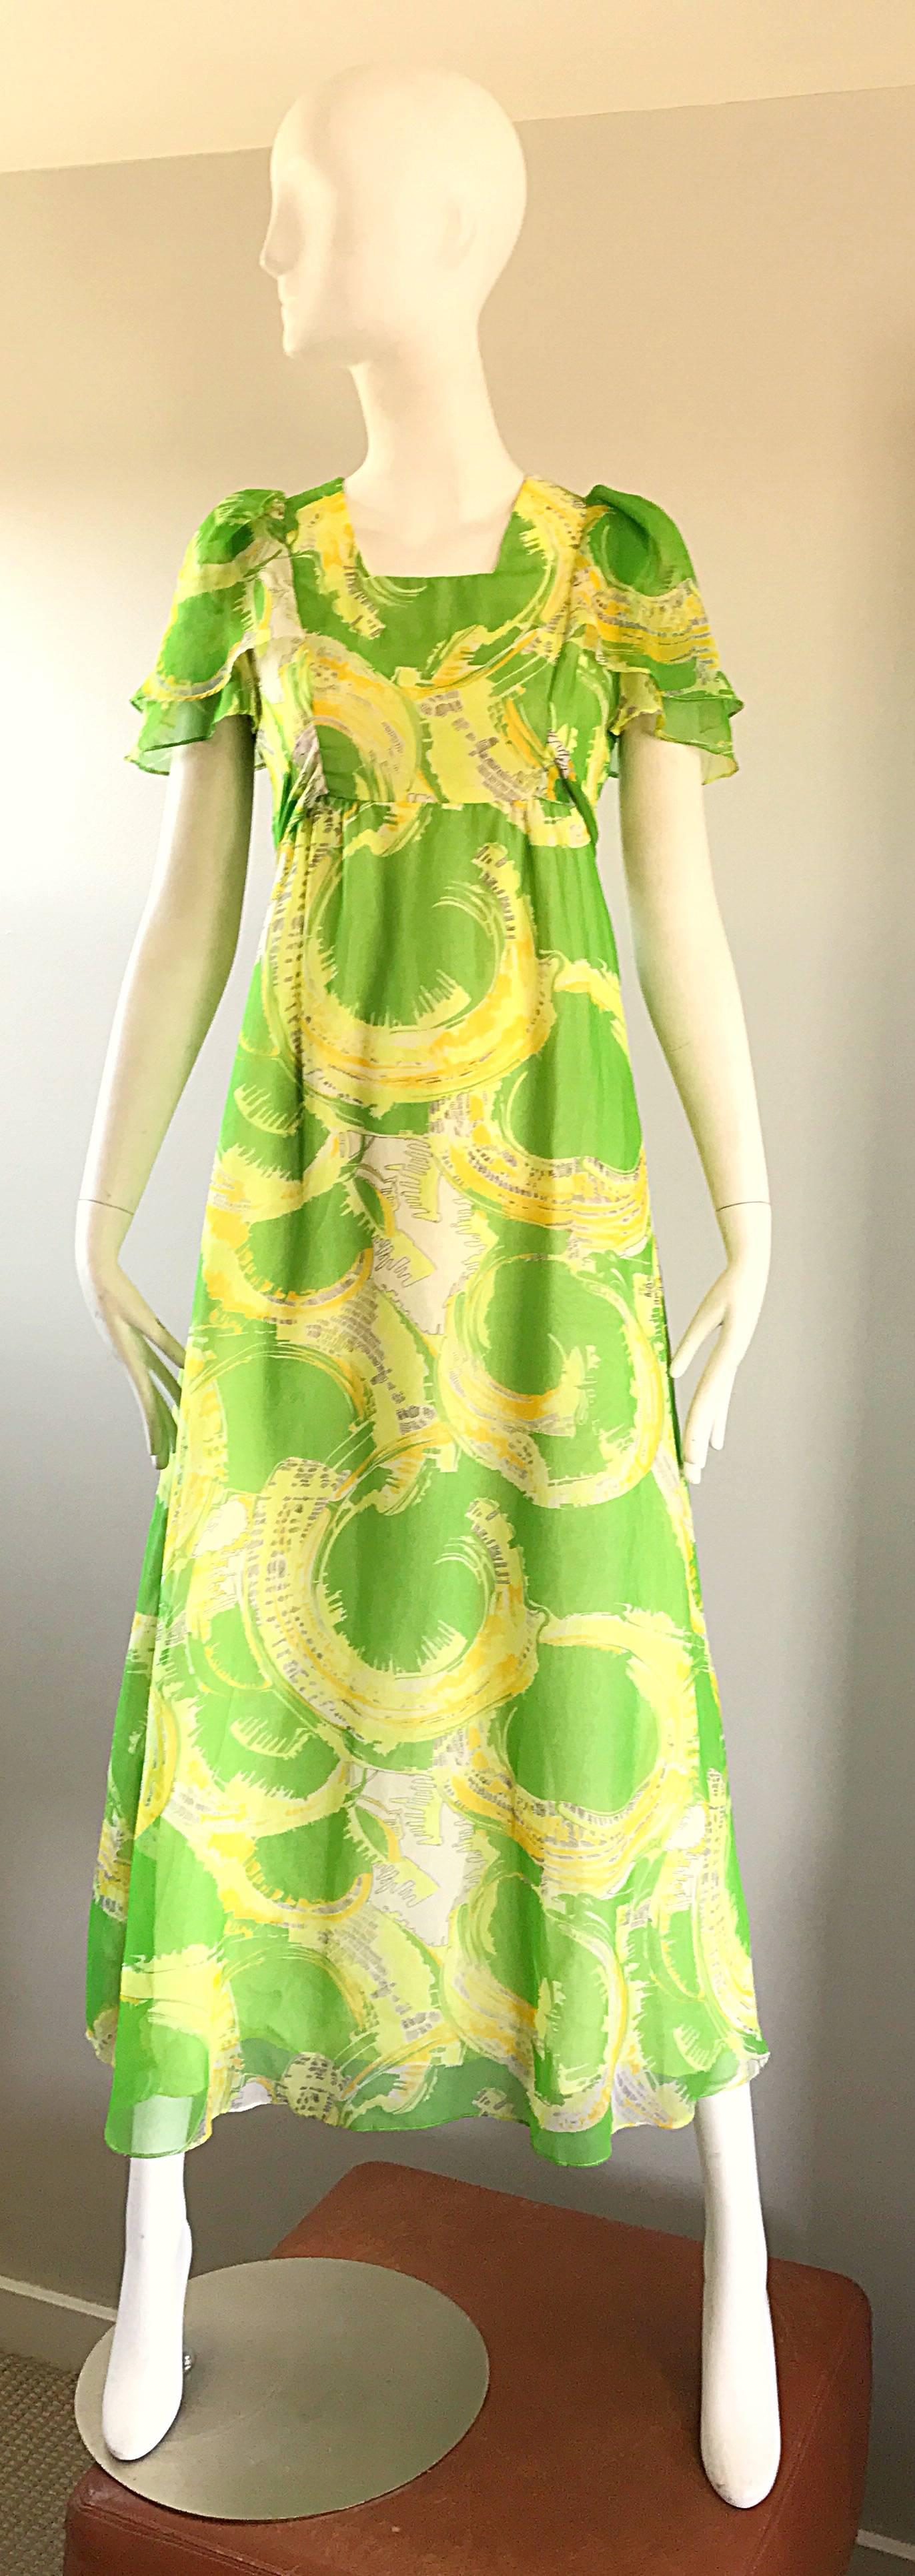 Superbe robe longue boho en mousseline de soie vert citron et jaune néon des années 1970 ! C'est un corsage avec une ceinture enveloppante et des manches courtes et volantes. 
Jupe maxi ample et indulgente. Fermeture à glissière en métal cachée dans